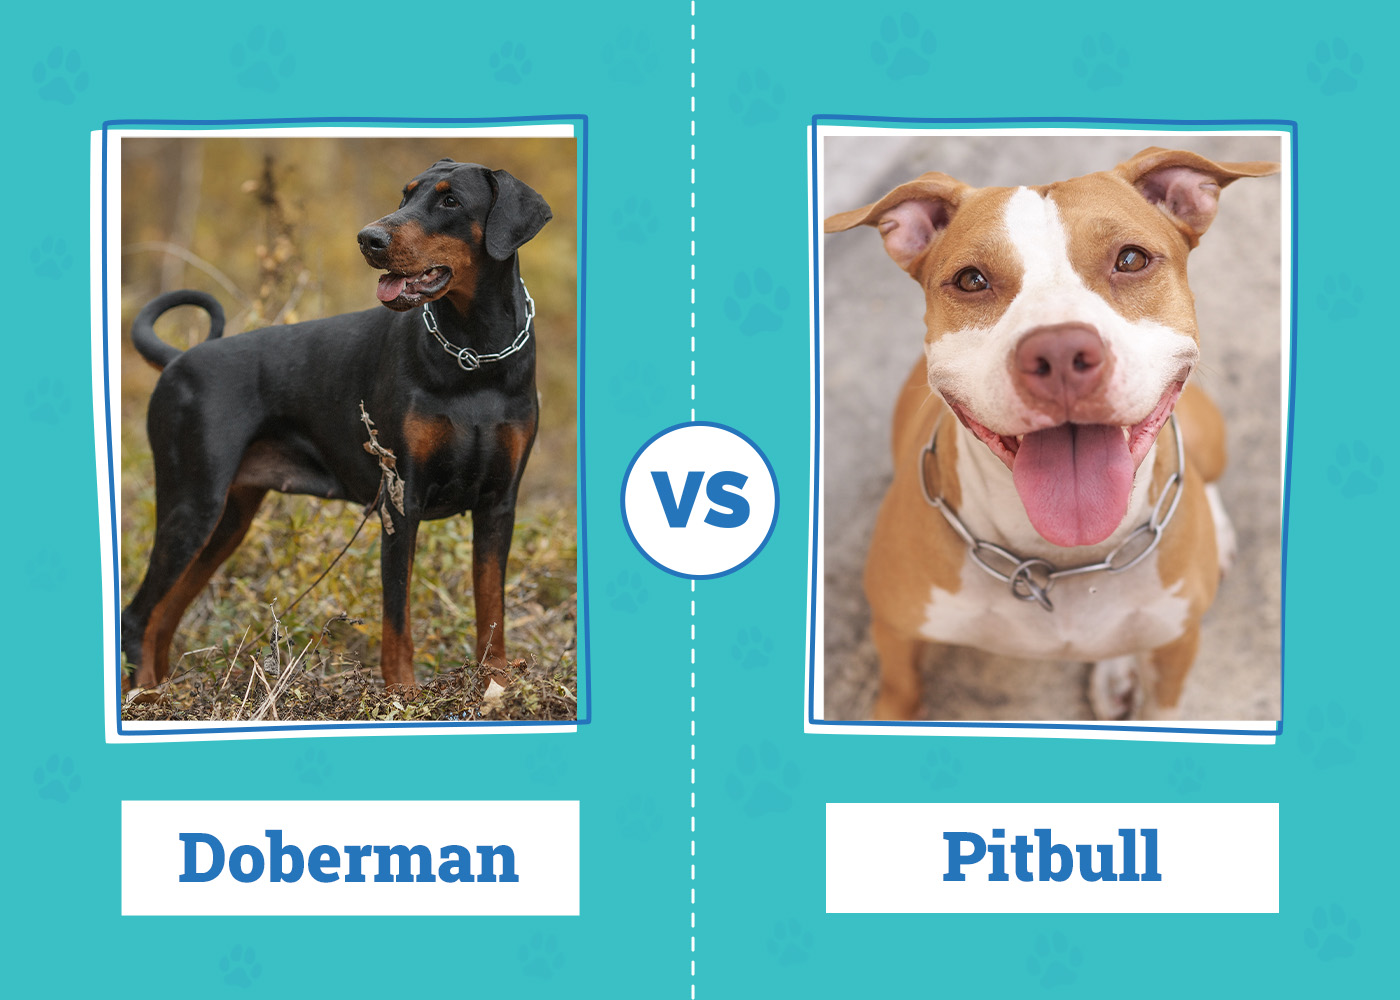 Doberman vs. Pitbull